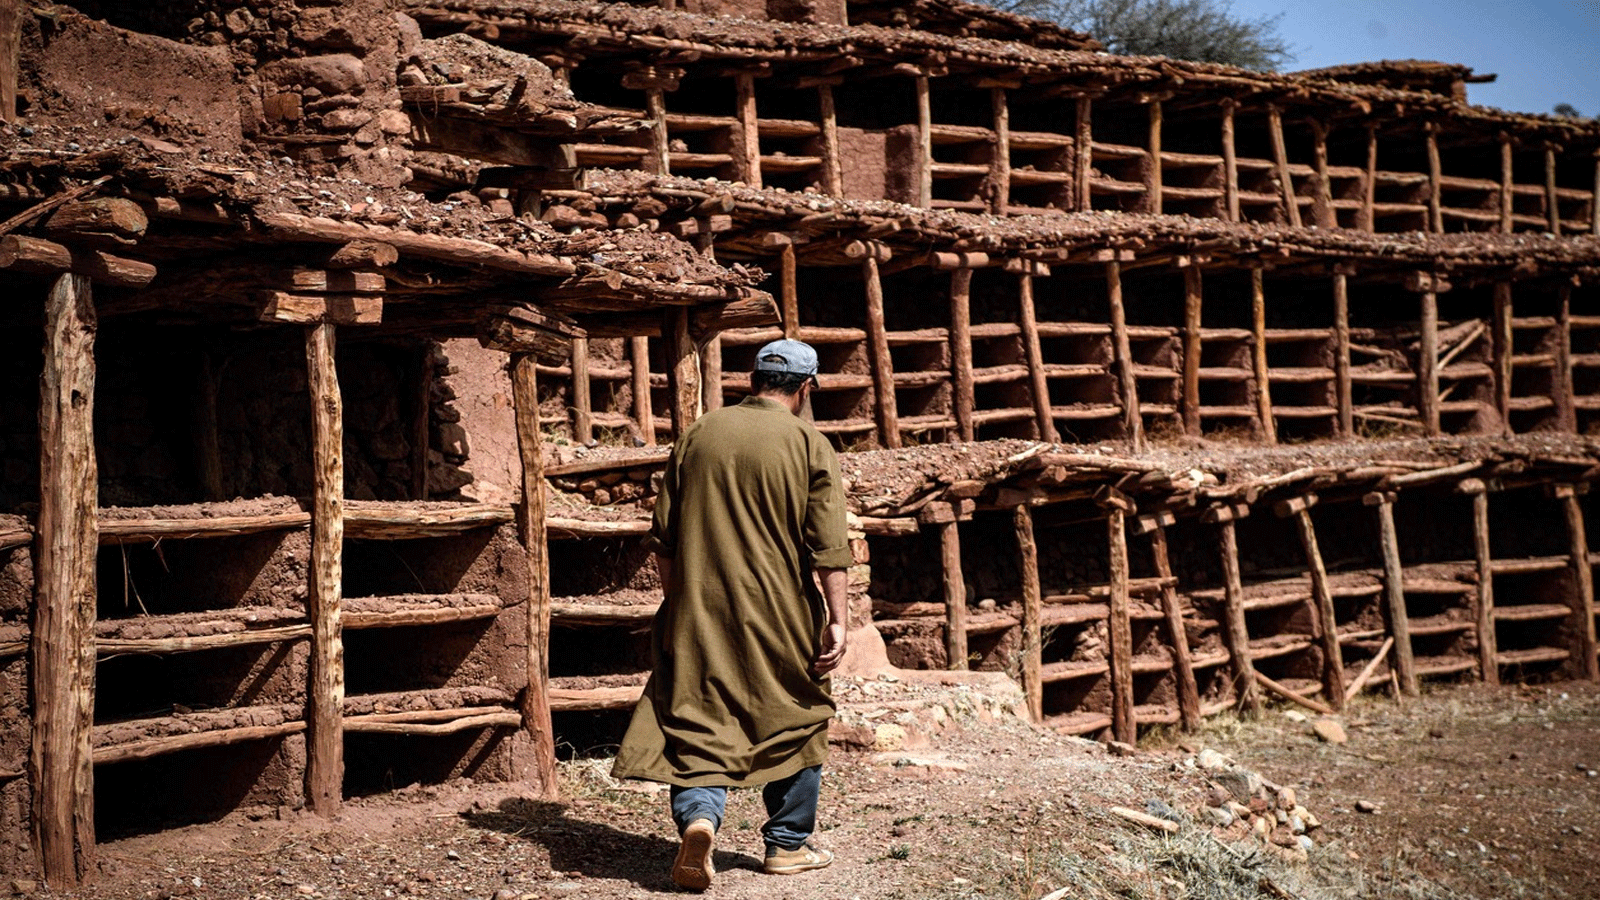 مربي نحل يعمل في منحل في إنزركي، المغرب، وهو أقدم وأكبر خلية نحل جماعية تتعرض للهجرة بسبب الجفاف